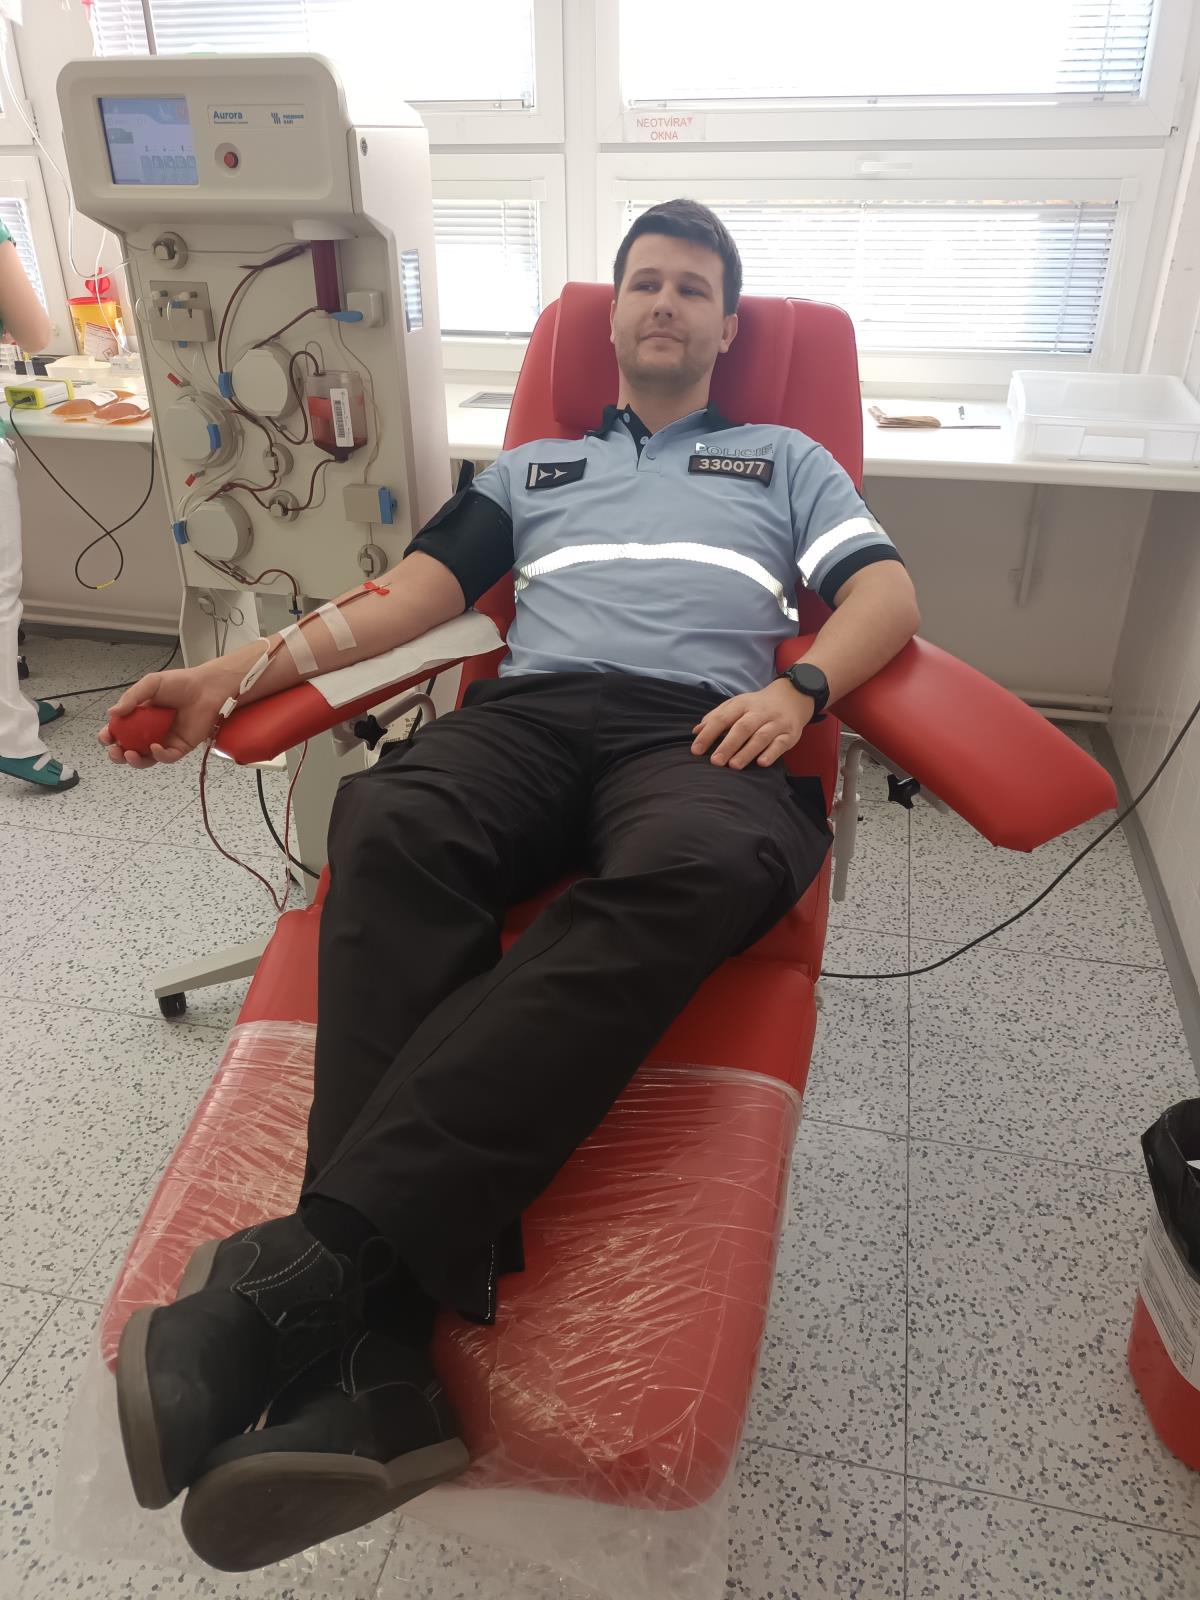 darovani_krve